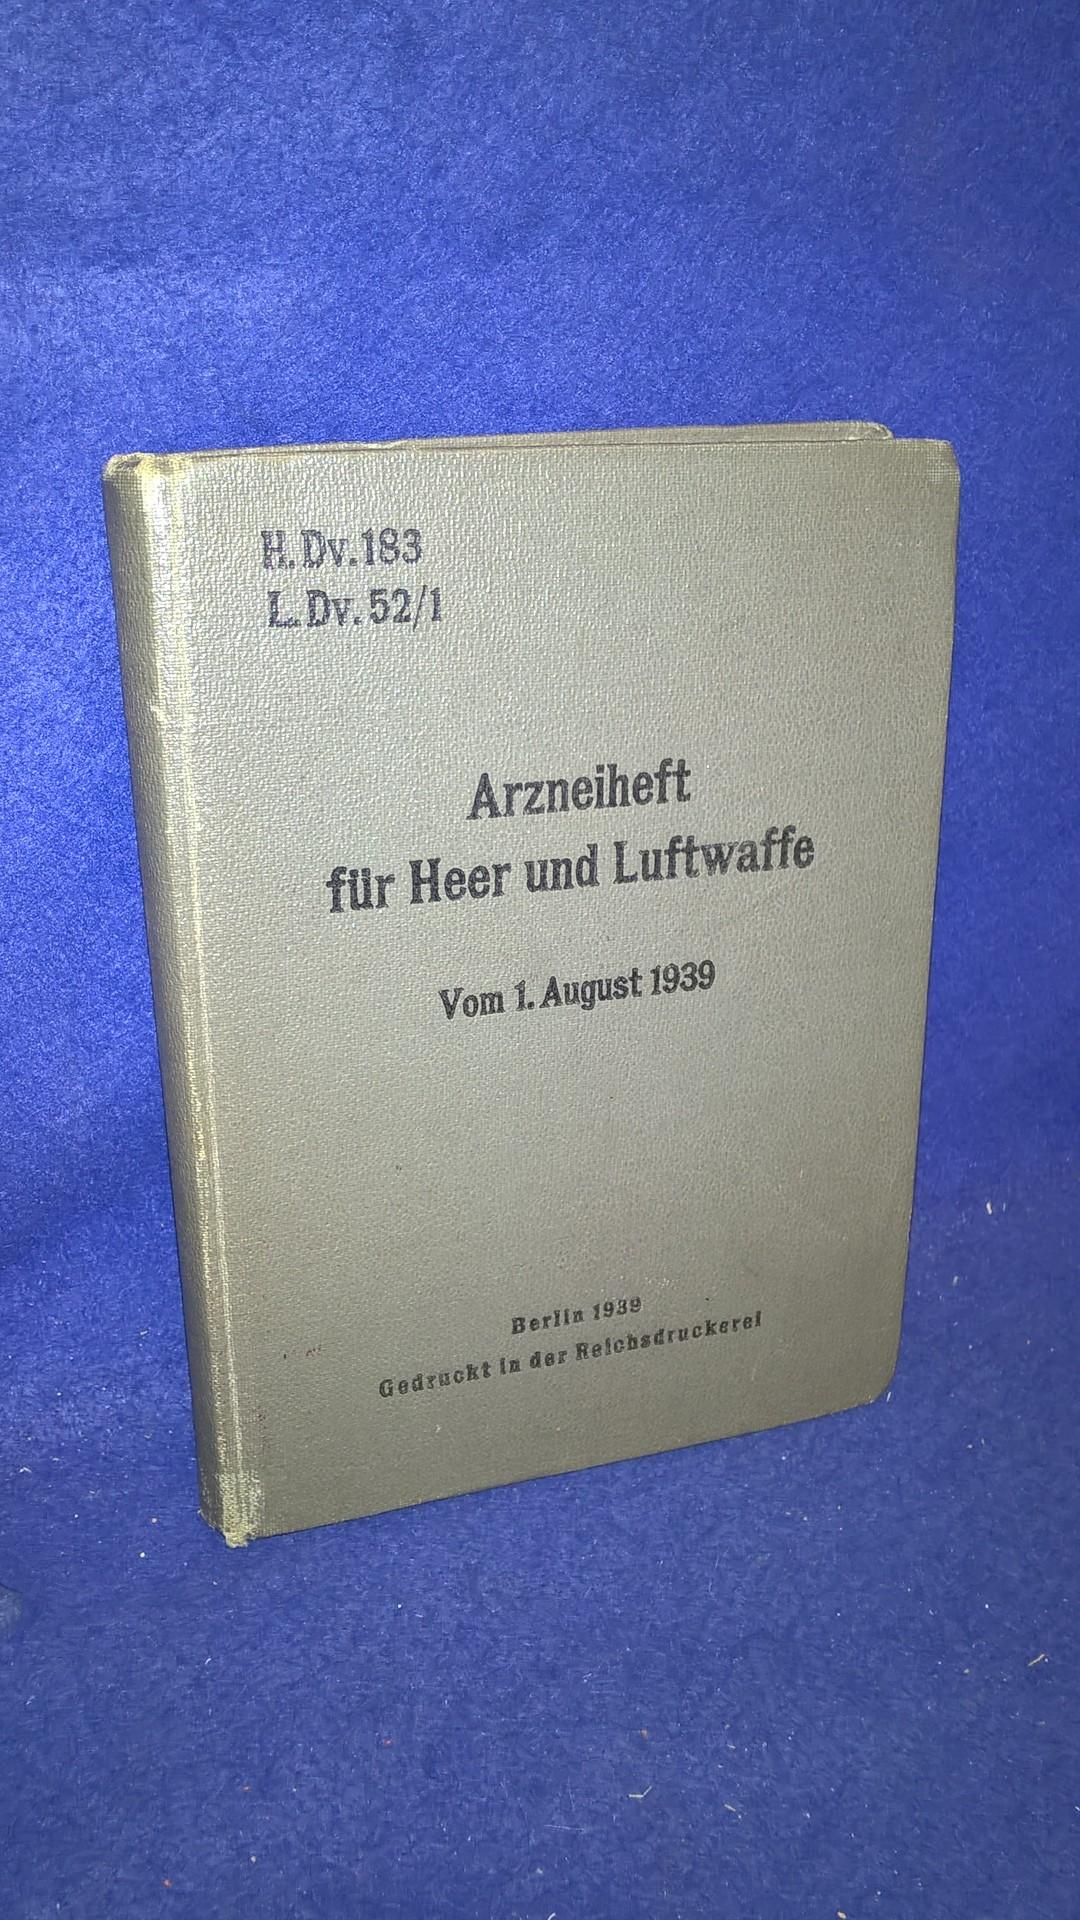 H.DV.183/L.DV52/1 Arzneiheft für Heer und Luftwaffe 1939